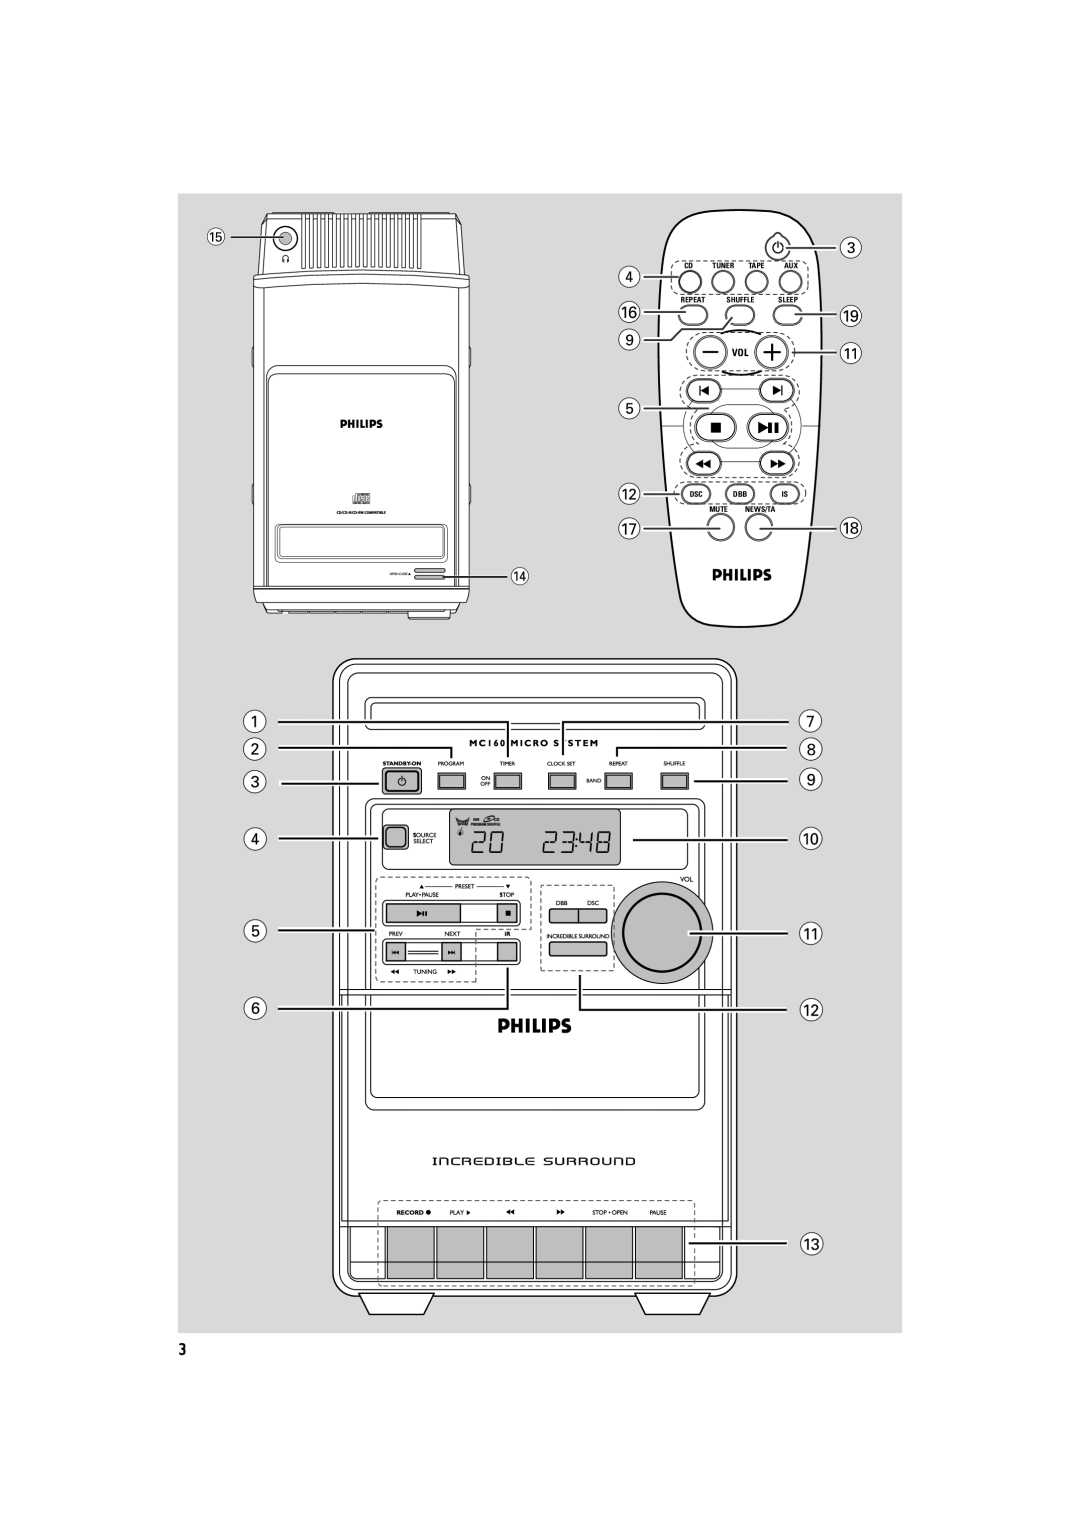 Philips MC160 user manual Tuner Tape, Mute News/Ta, Repeat, Shuffle, Sleep 